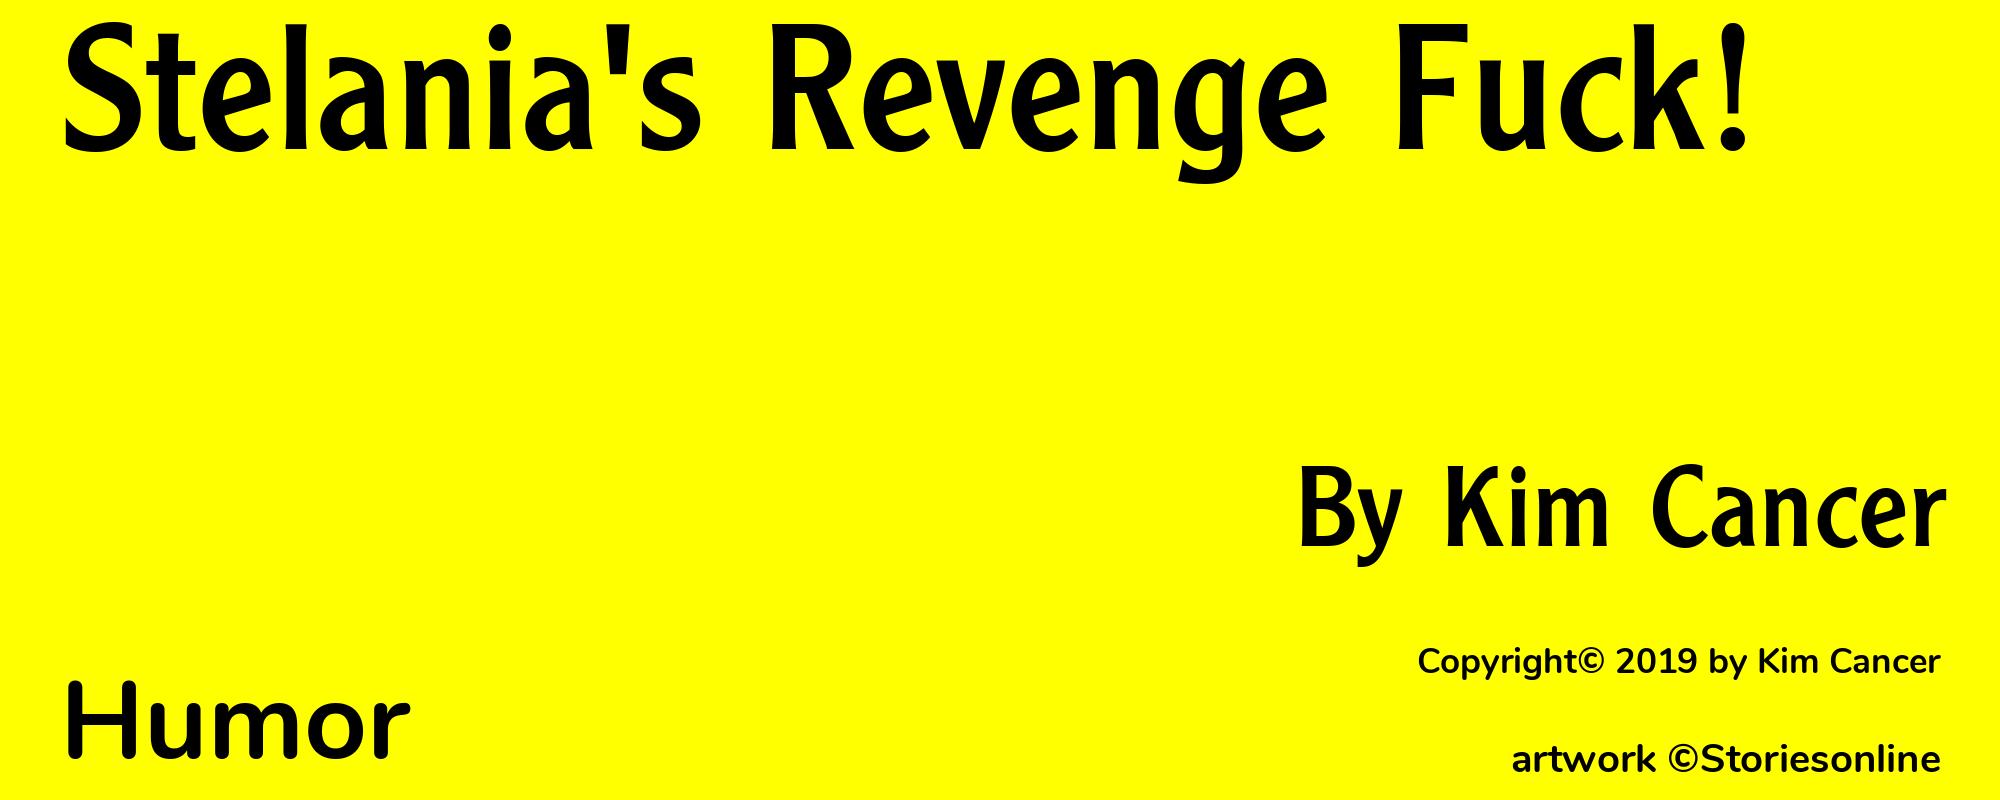 Stelania's Revenge Fuck! - Cover